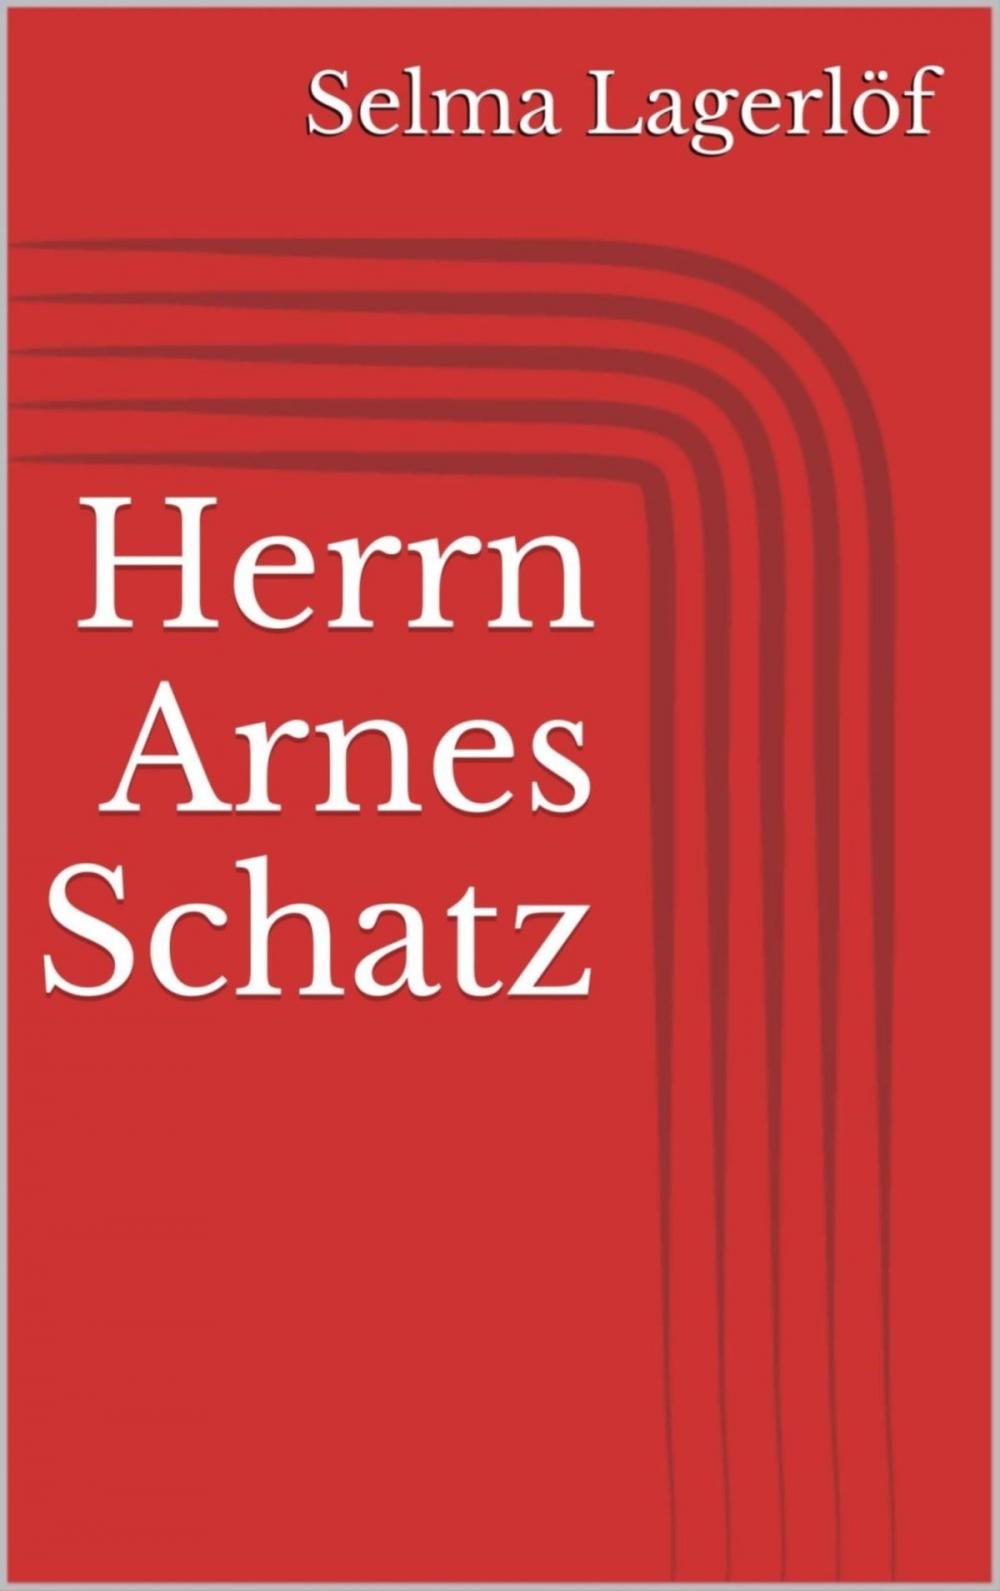 Big bigCover of Herrn Arnes Schatz